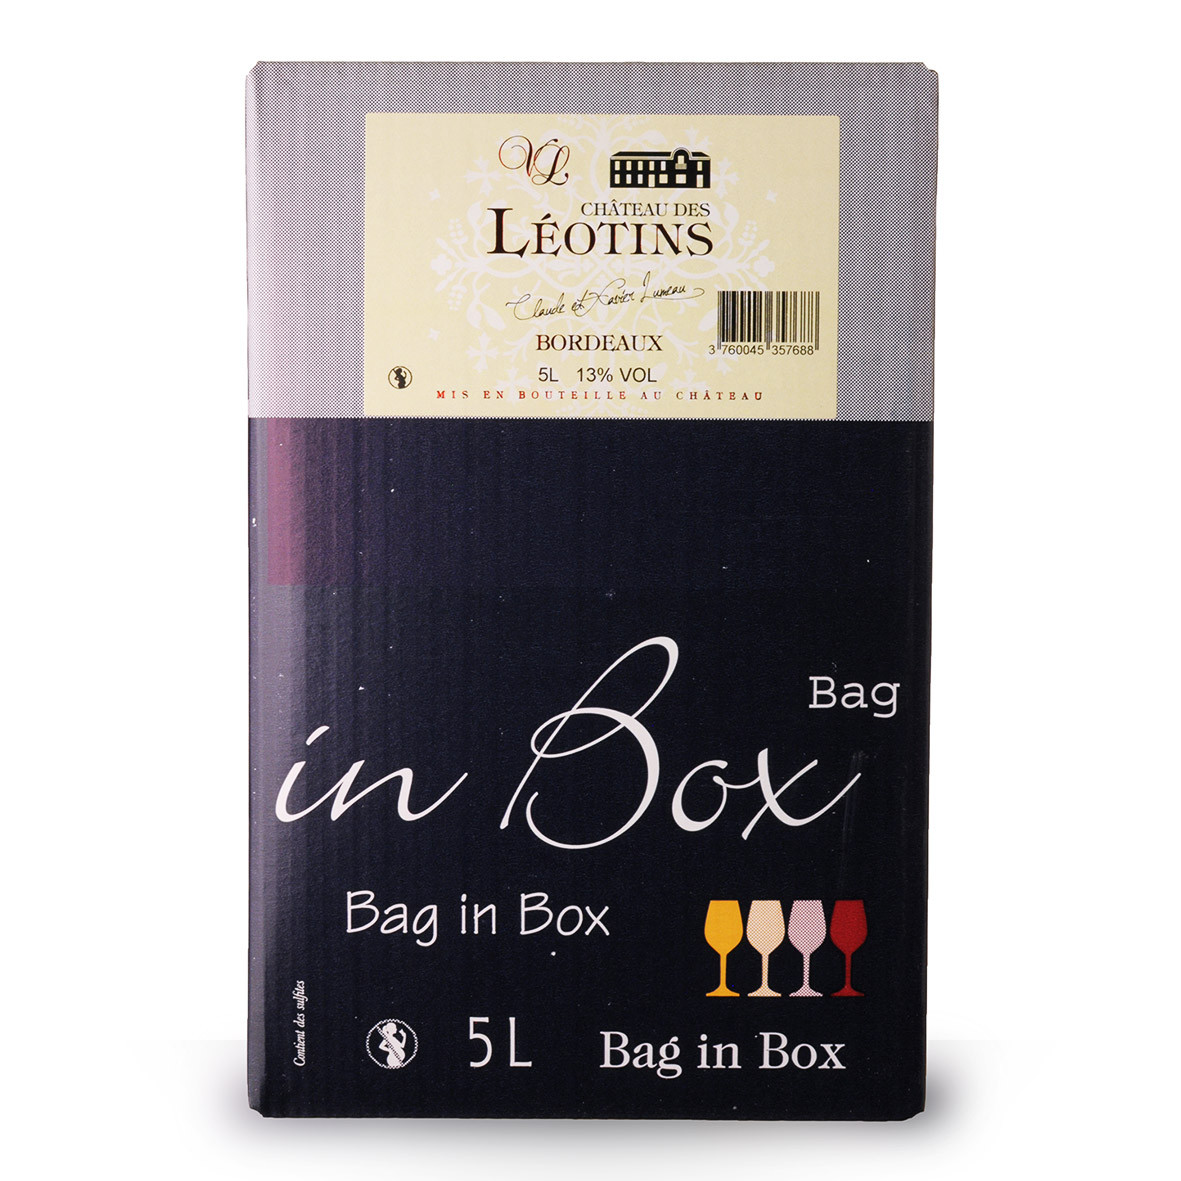 Bag-In-Box 5L Château des Léotins Bordeaux Rouge www.odyssee-vins.com